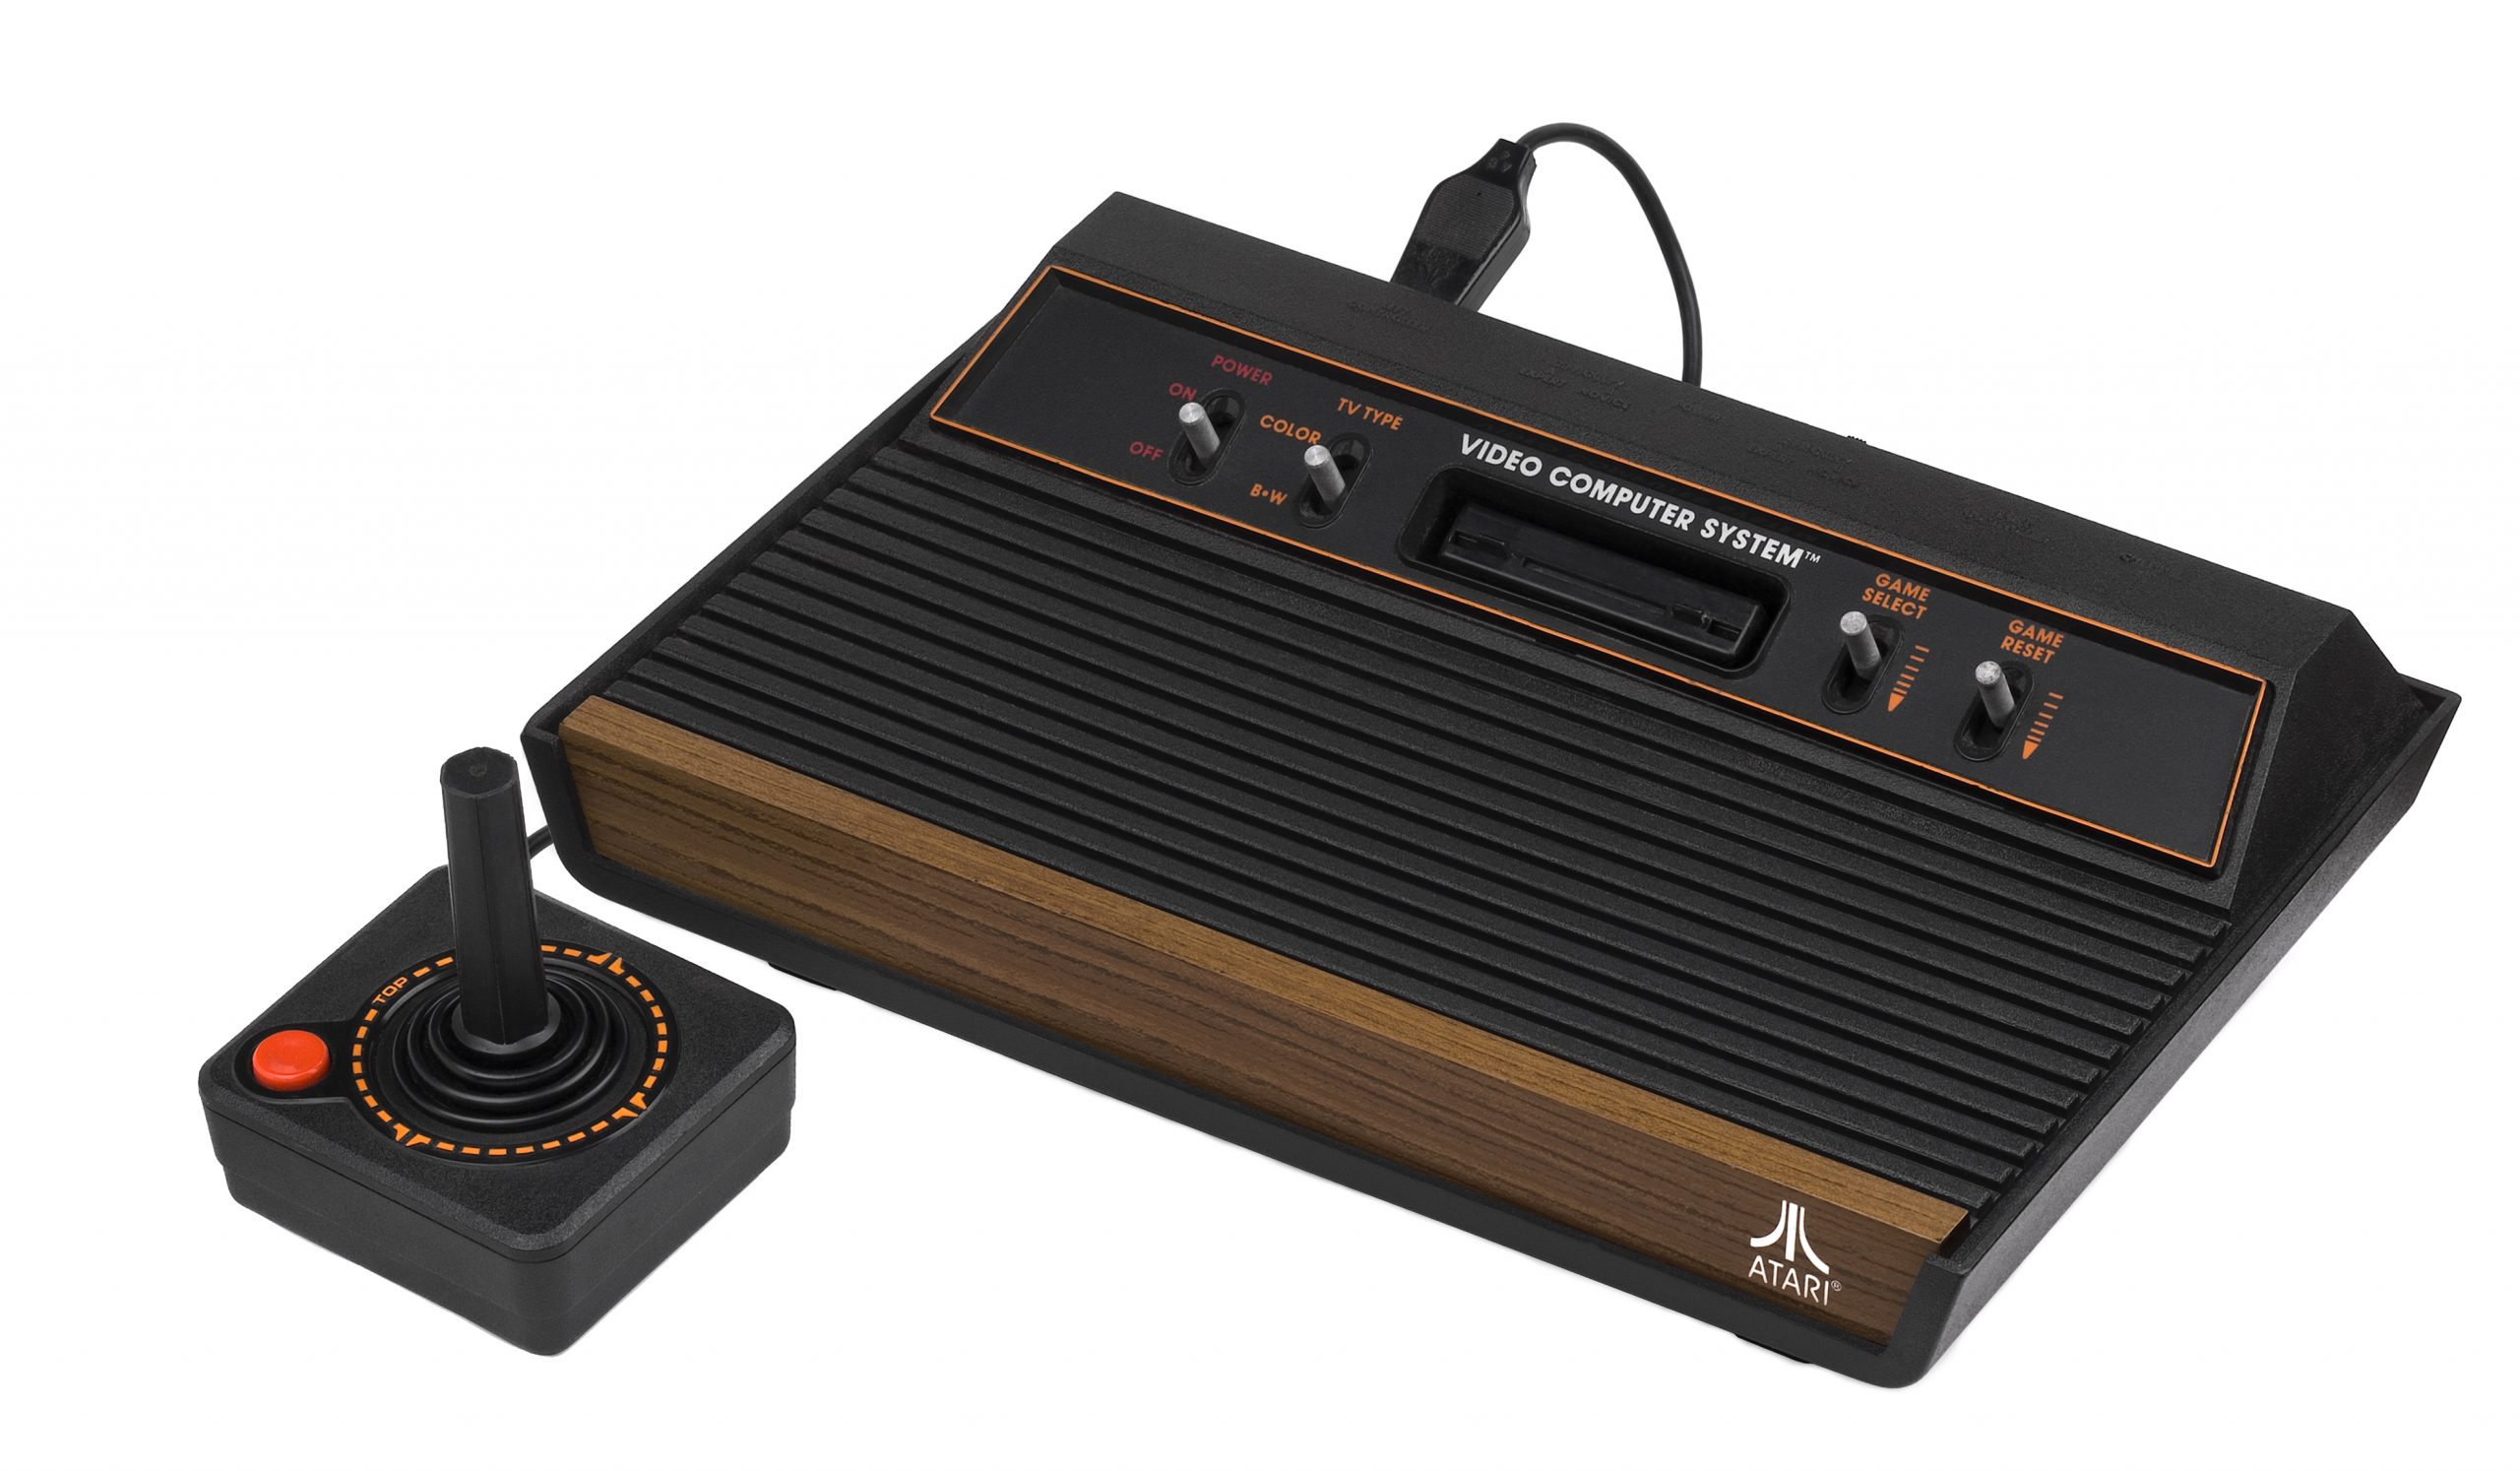 Saiba como executar jogos de Atari no PC  G1 - Tecnologia e Games -  Tira-dúvidas de Tecnologia